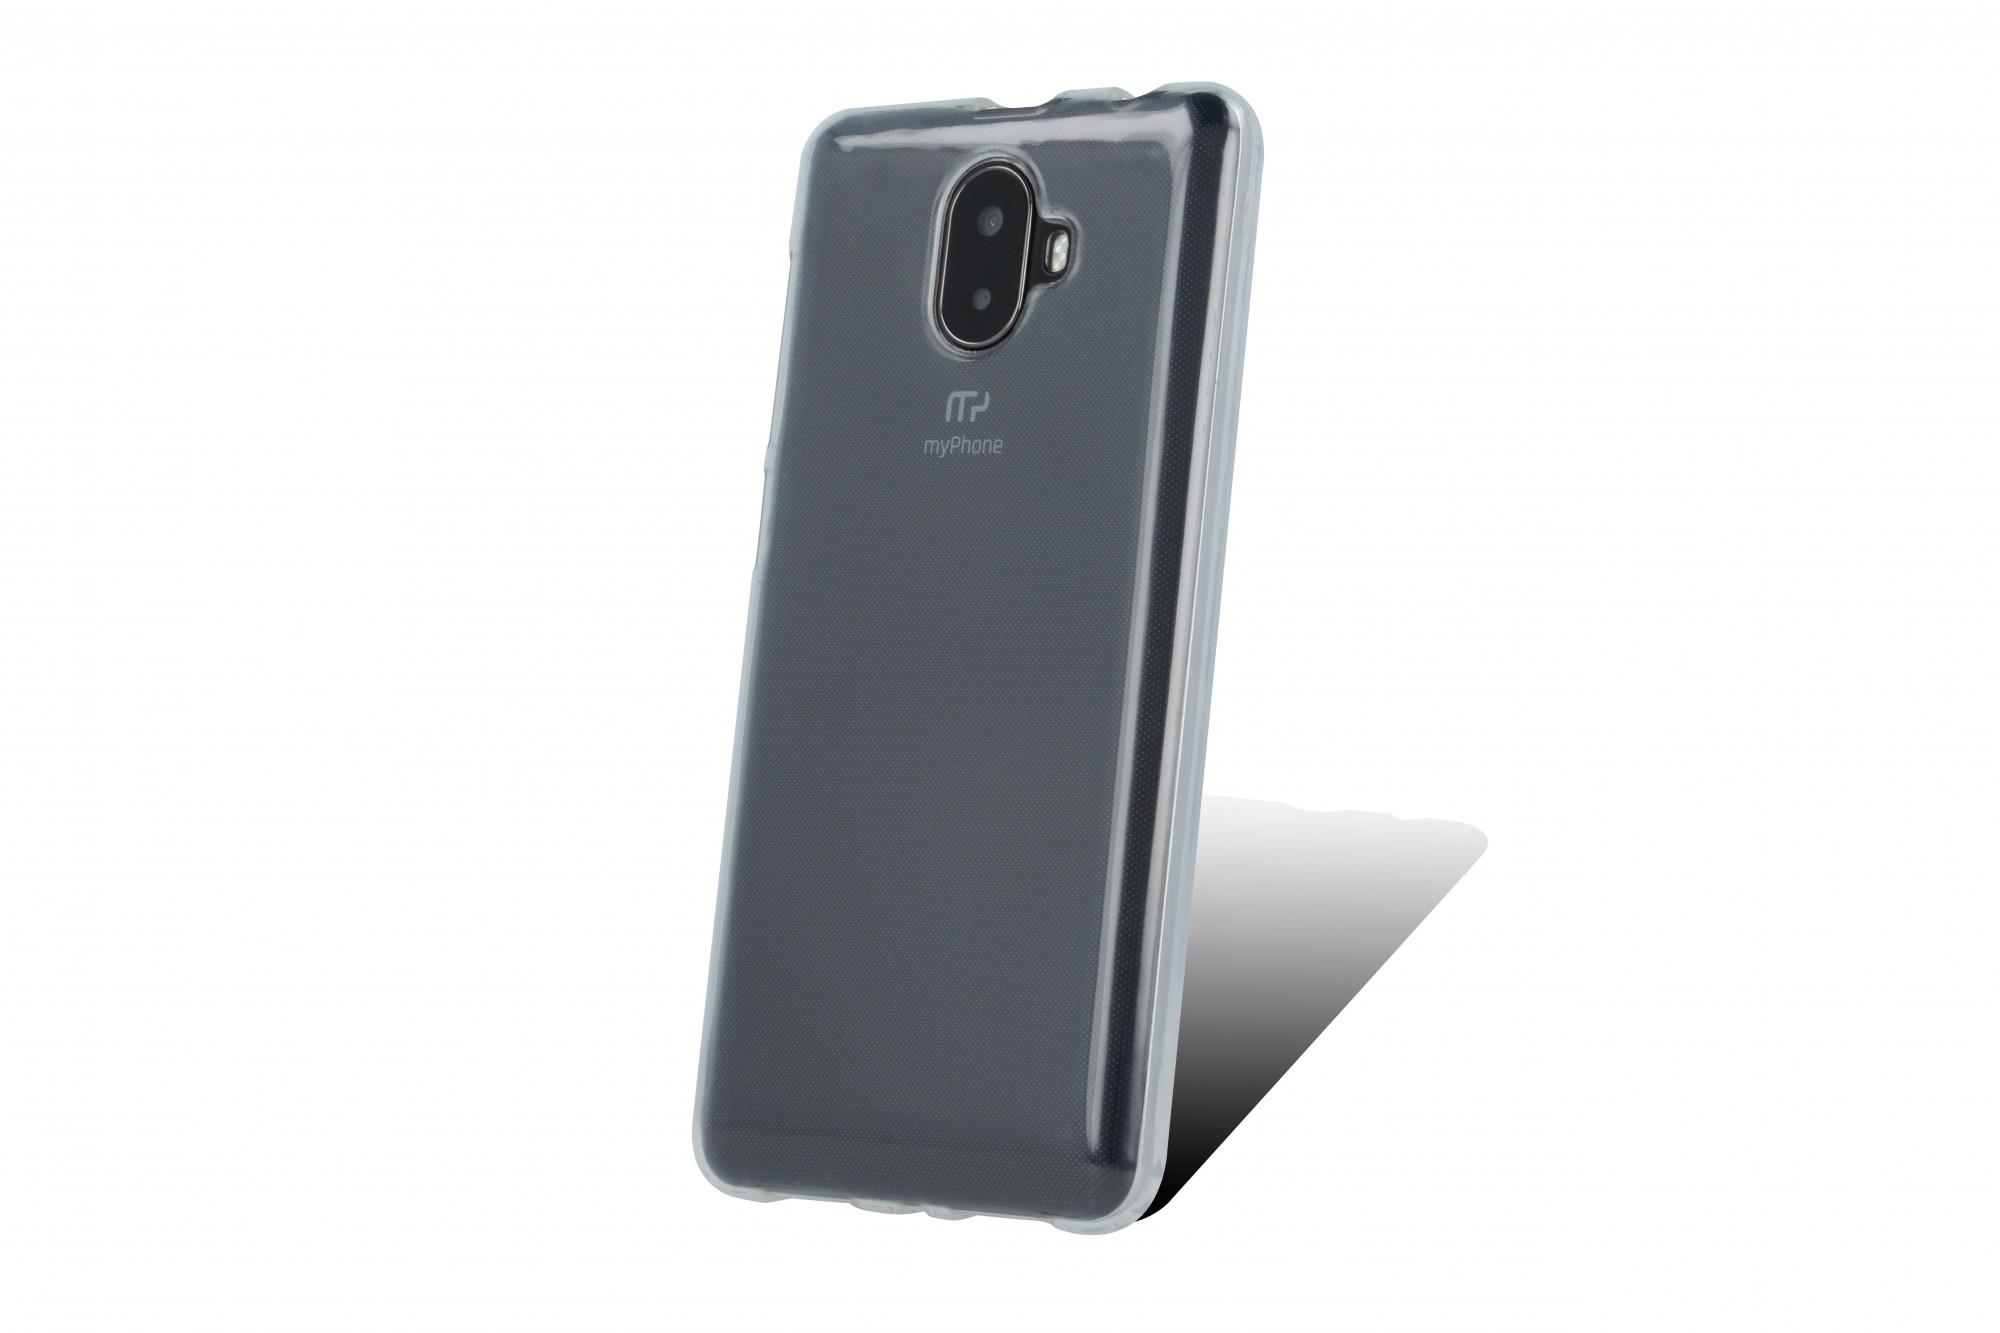 Silikonové TPU pouzdro pro myPhone Pocket 18x9 transparentní